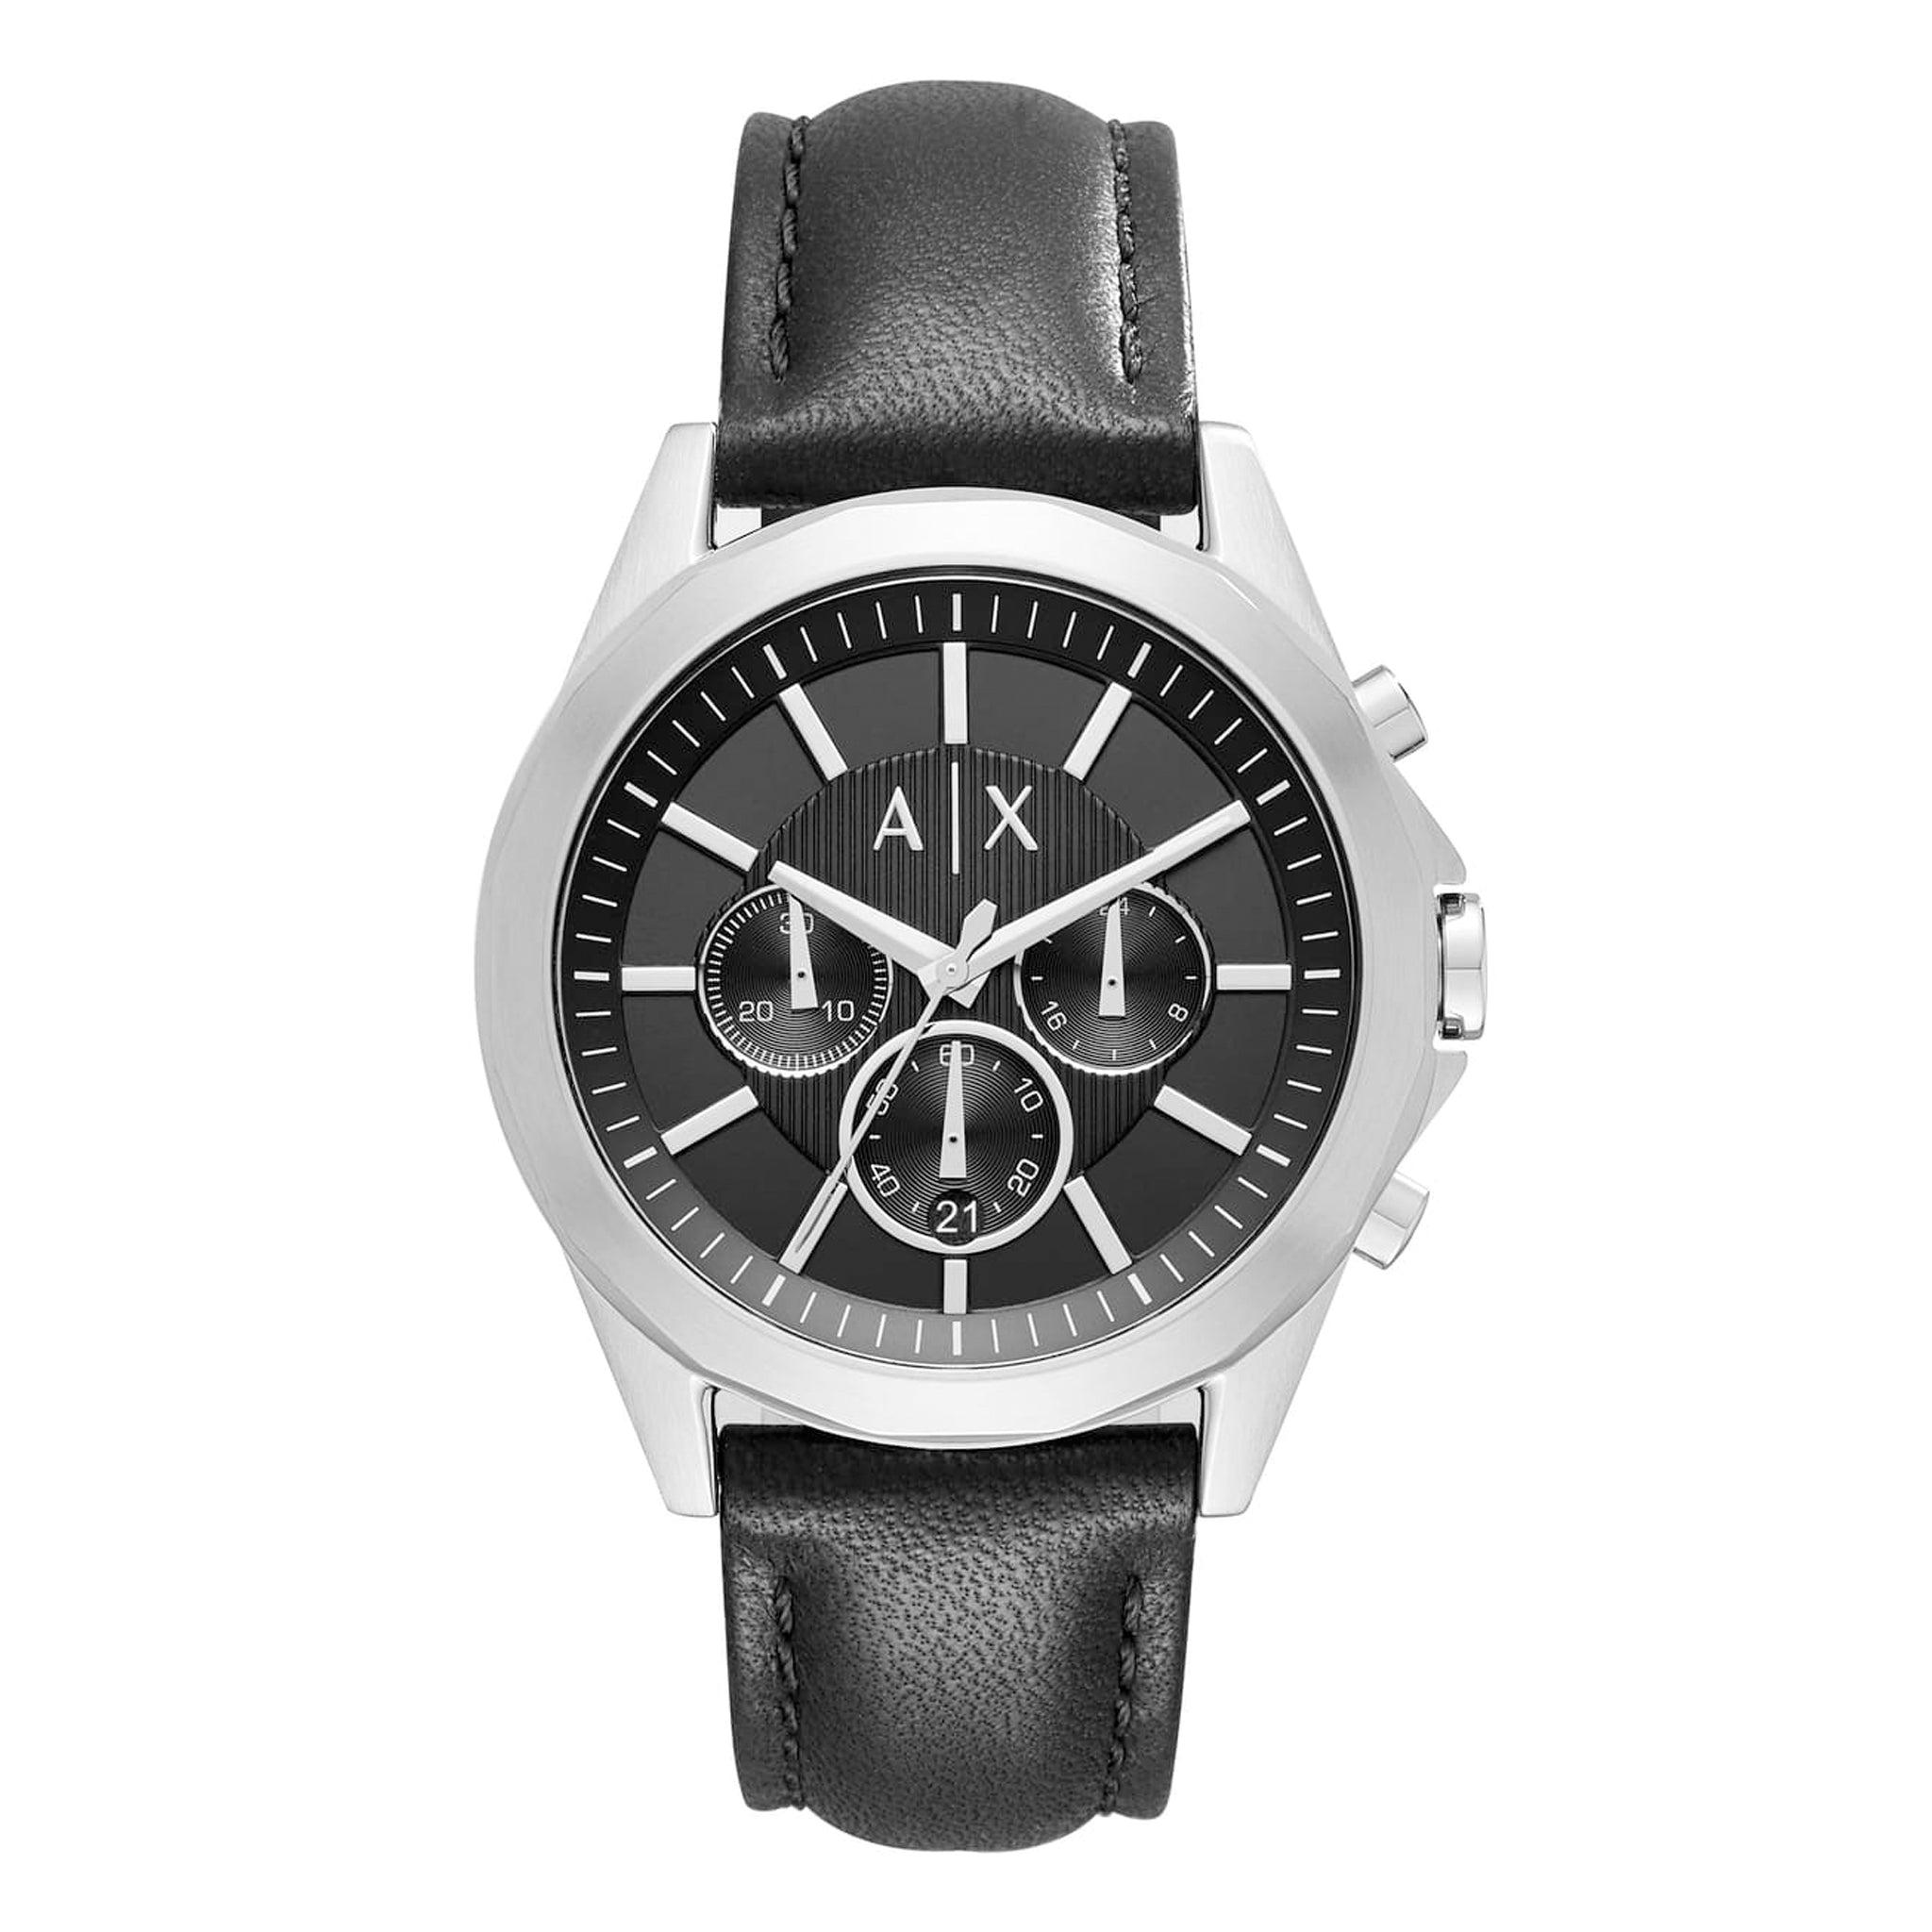 ساعة أرماني اكستشينج للرجال من الجلد باللون الاسود Armani Exchange Men's Black Leather Watch Ax2604